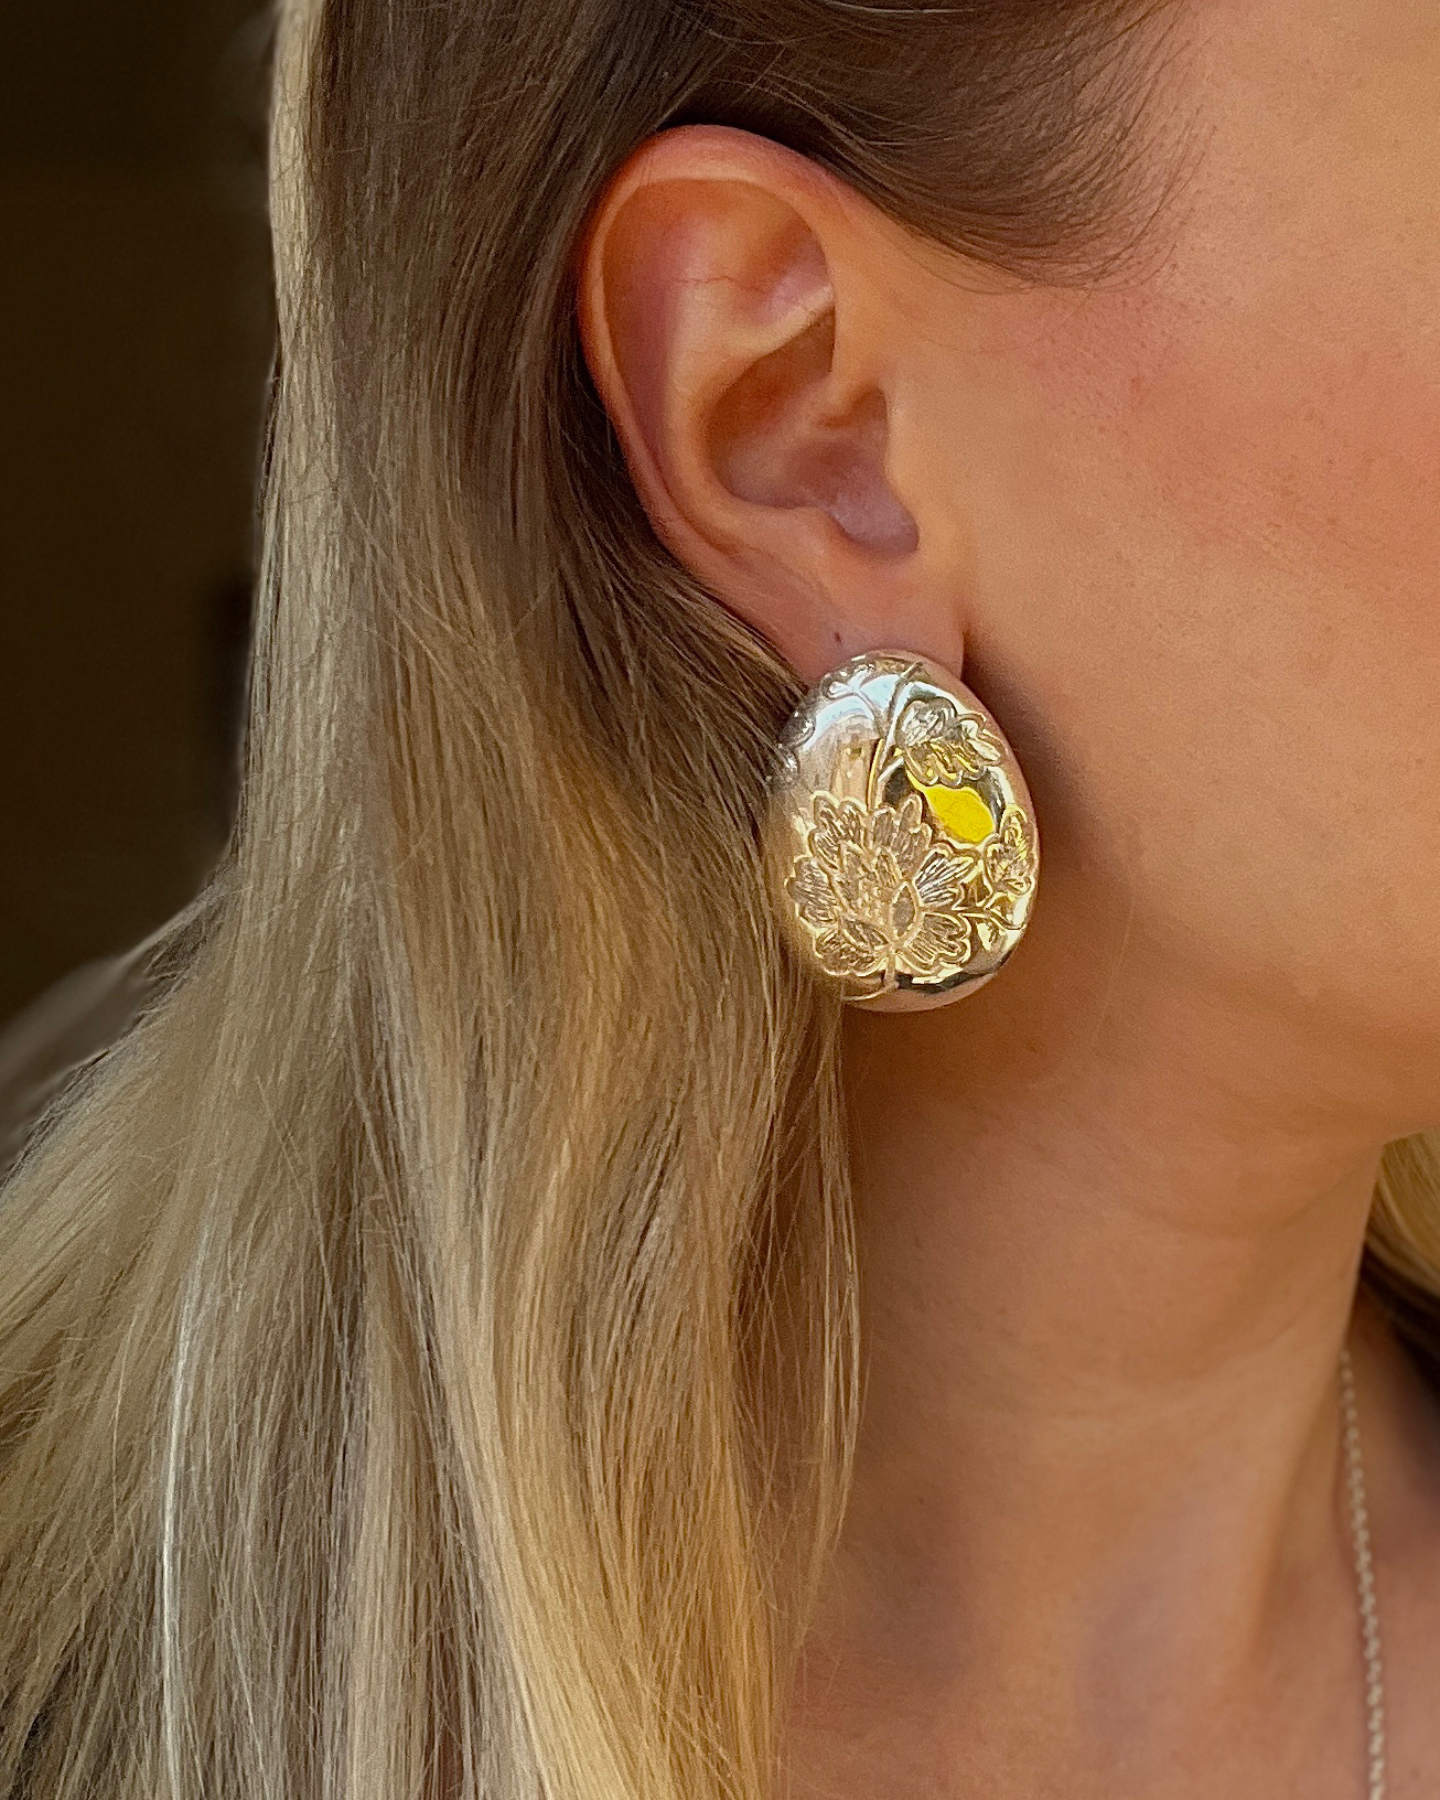 Bloom earrings